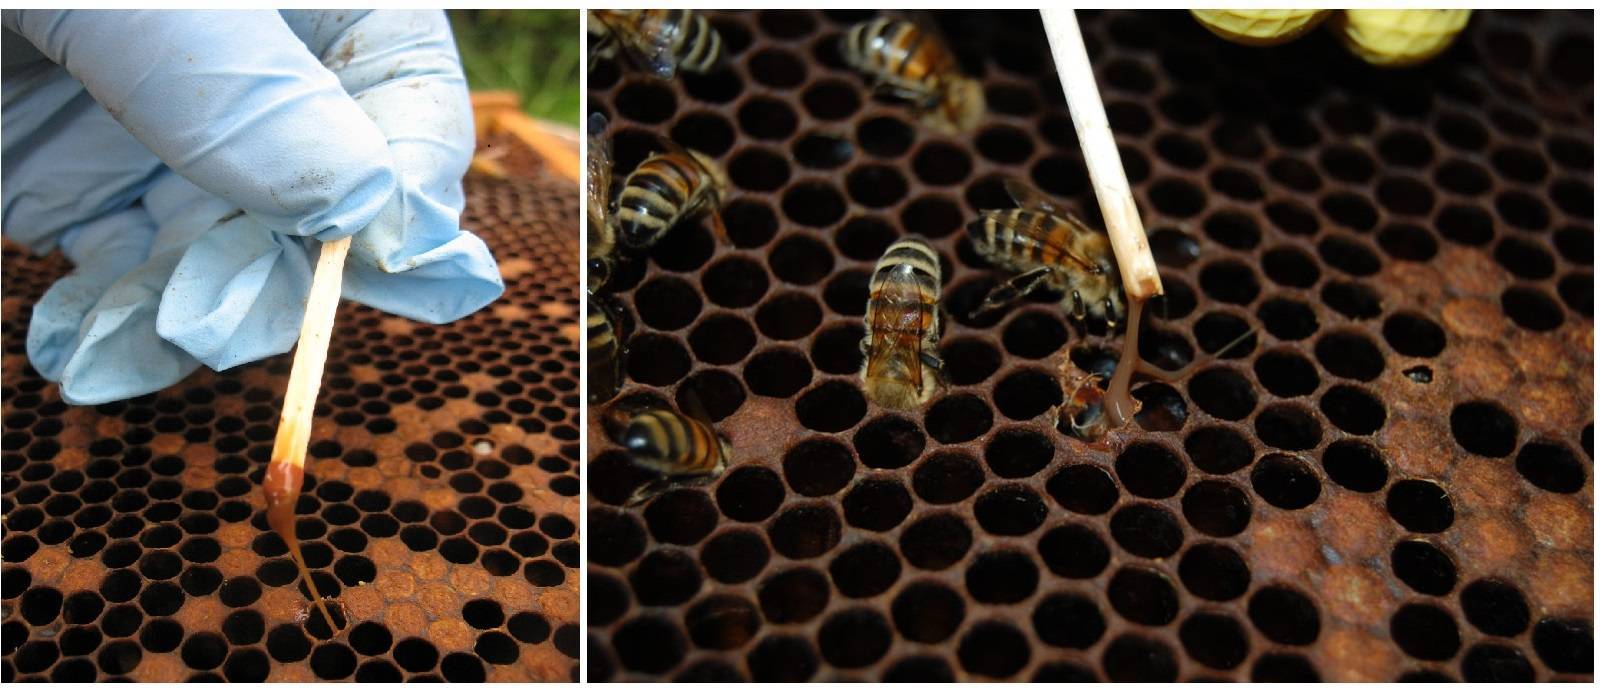 Лечение гнильца у пчел. полезные советы по обнаружению признаков, использованию препаратов и профилактике | пчеловодство | пчеловод.ком